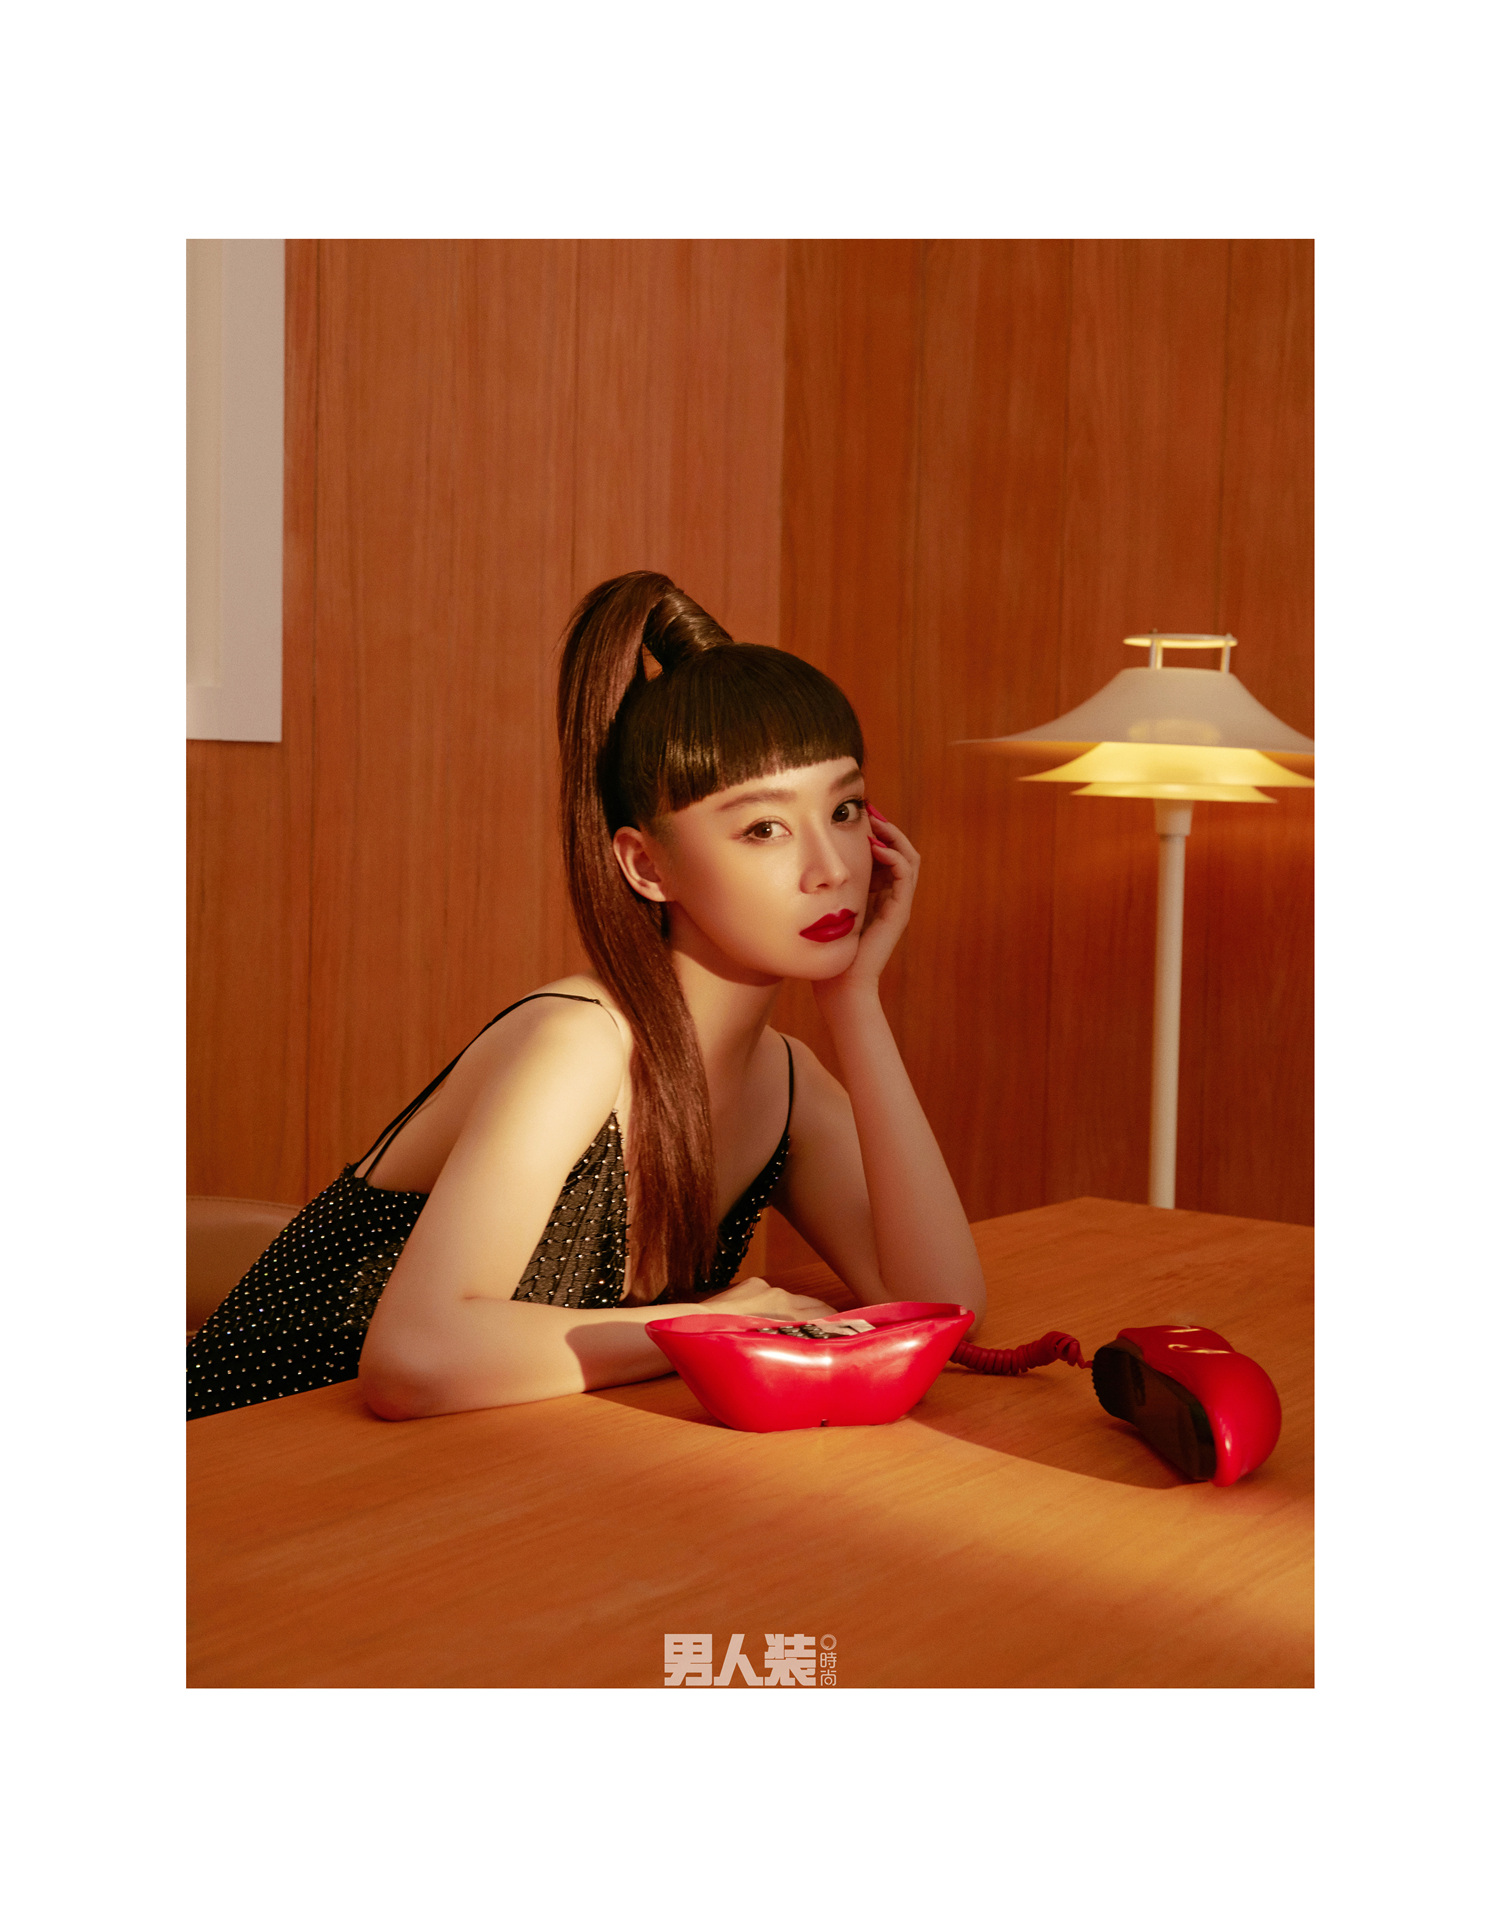 袁姗姗登《男人装》十月刊封面,高马尾诠释运动与性感